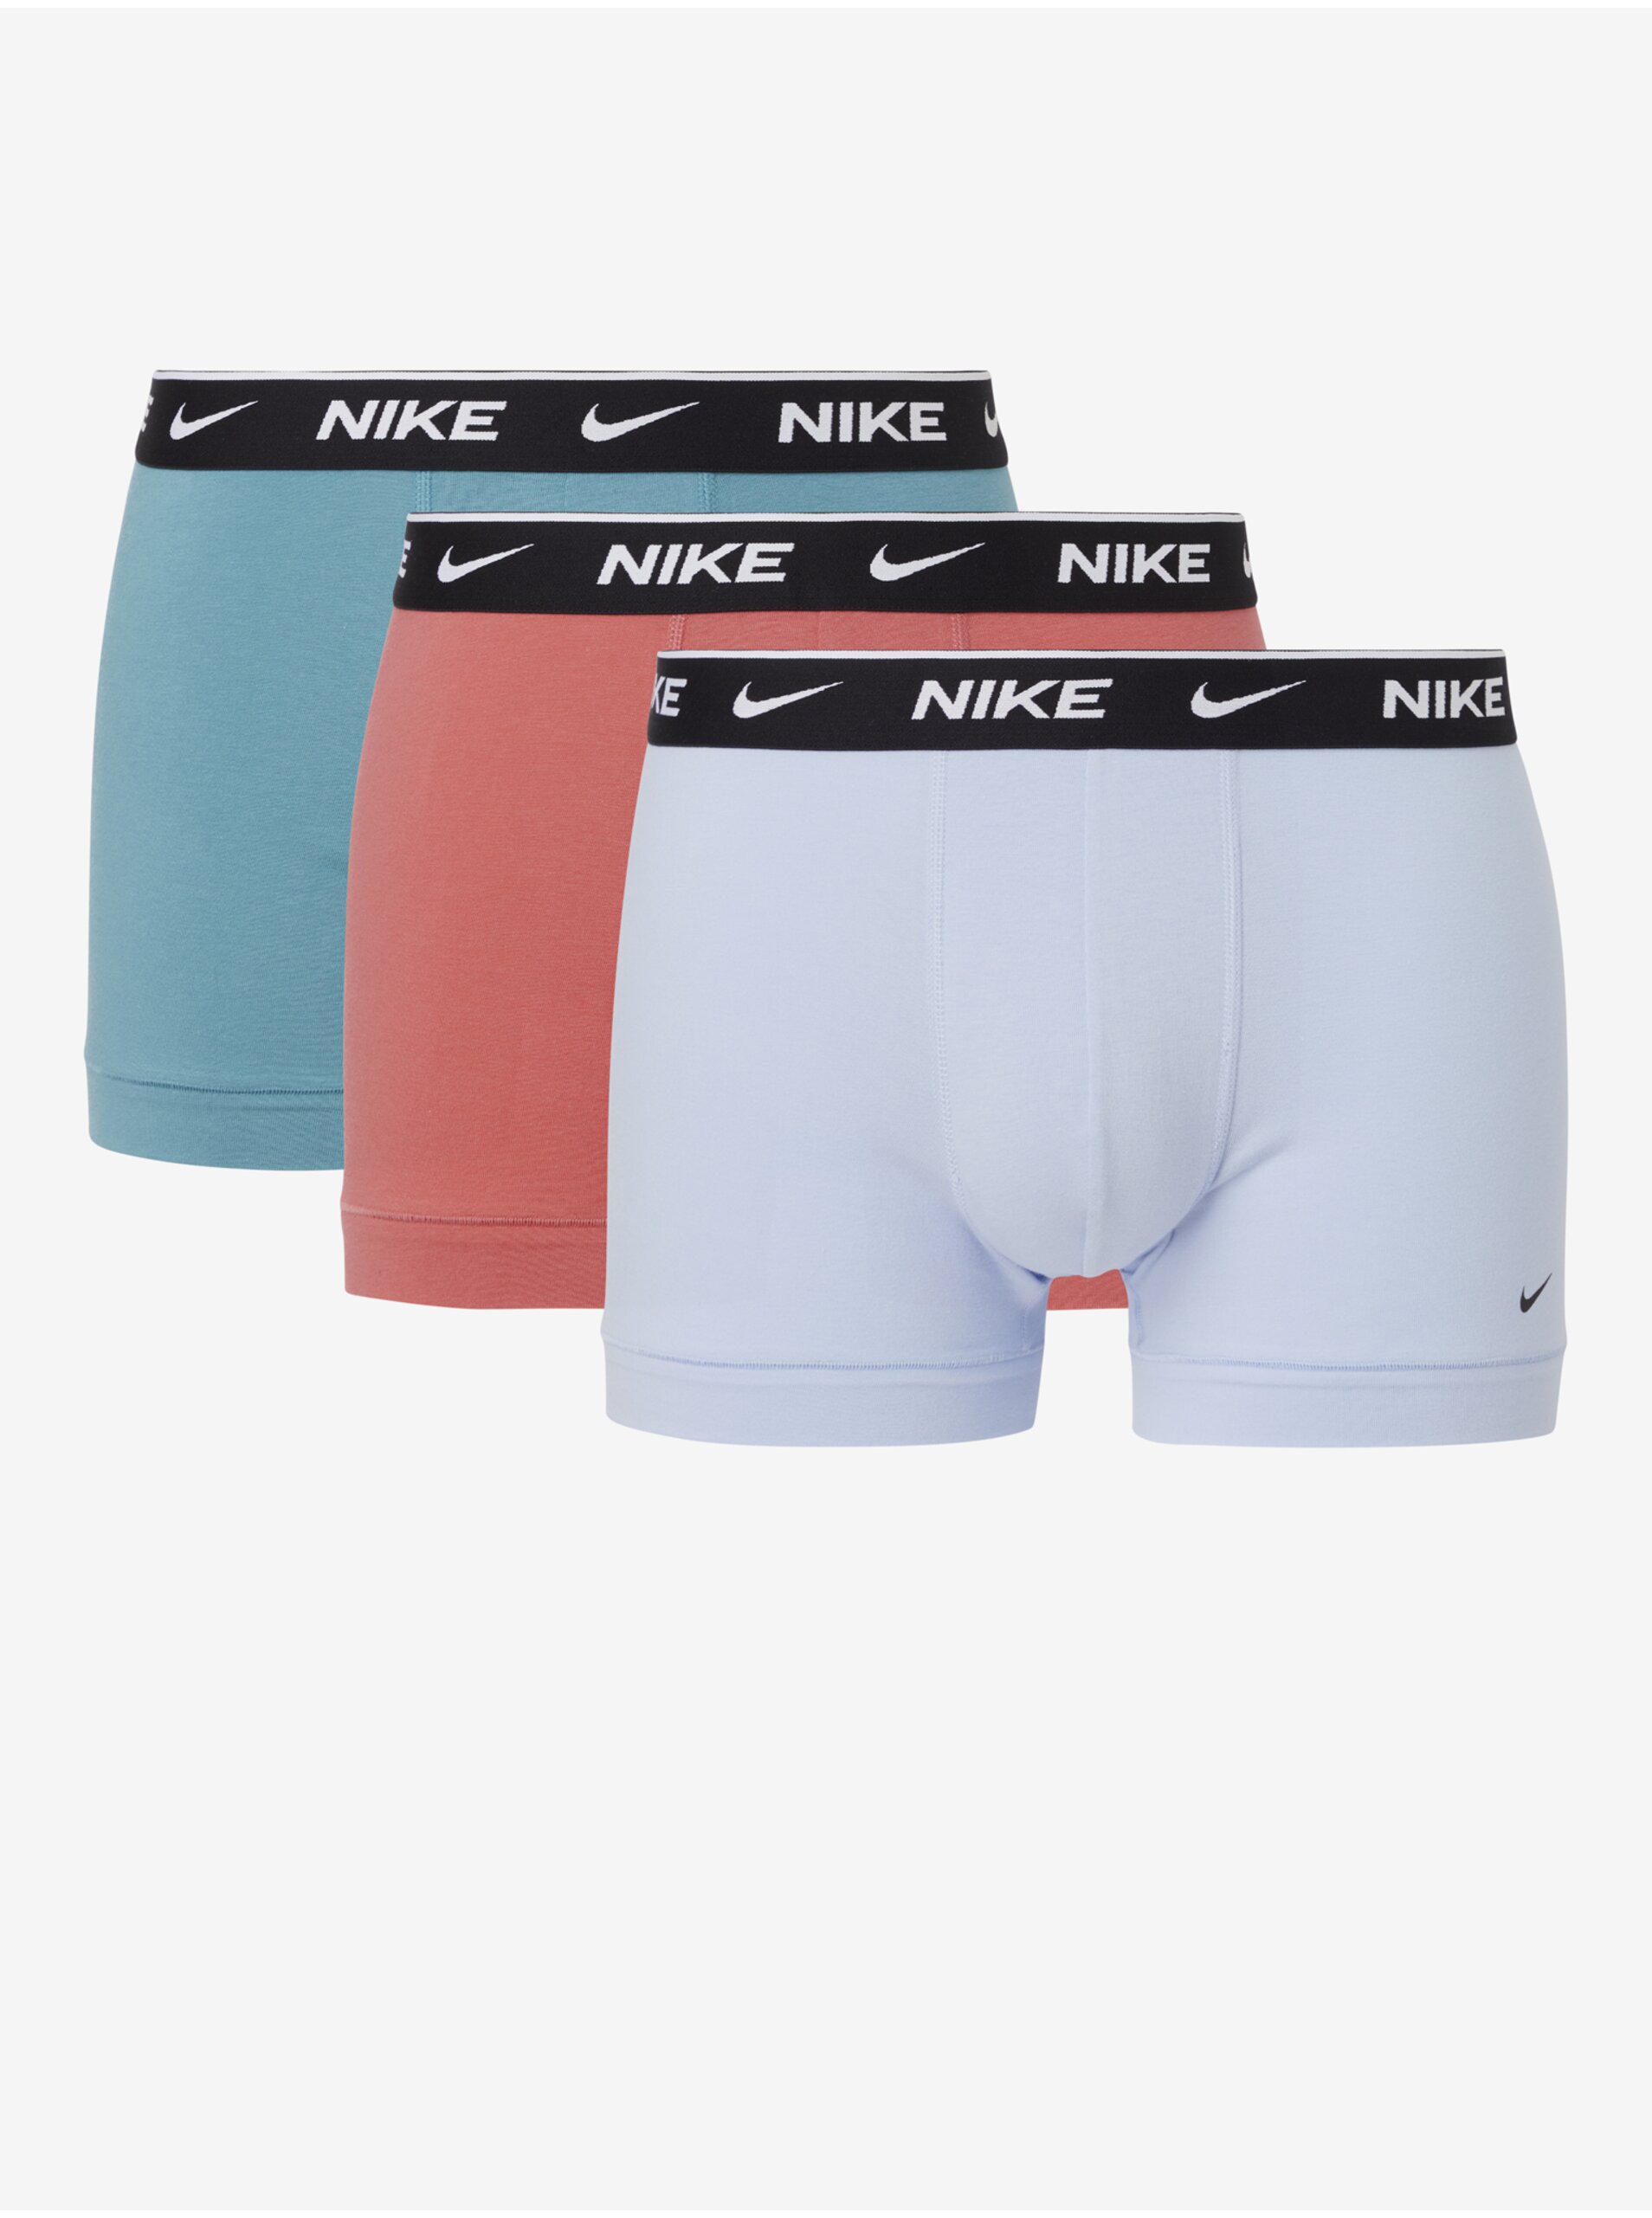 Lacno Súprava troch pánskych boxeriek v bielej, svetlo modrej a ružovej farbe Nike